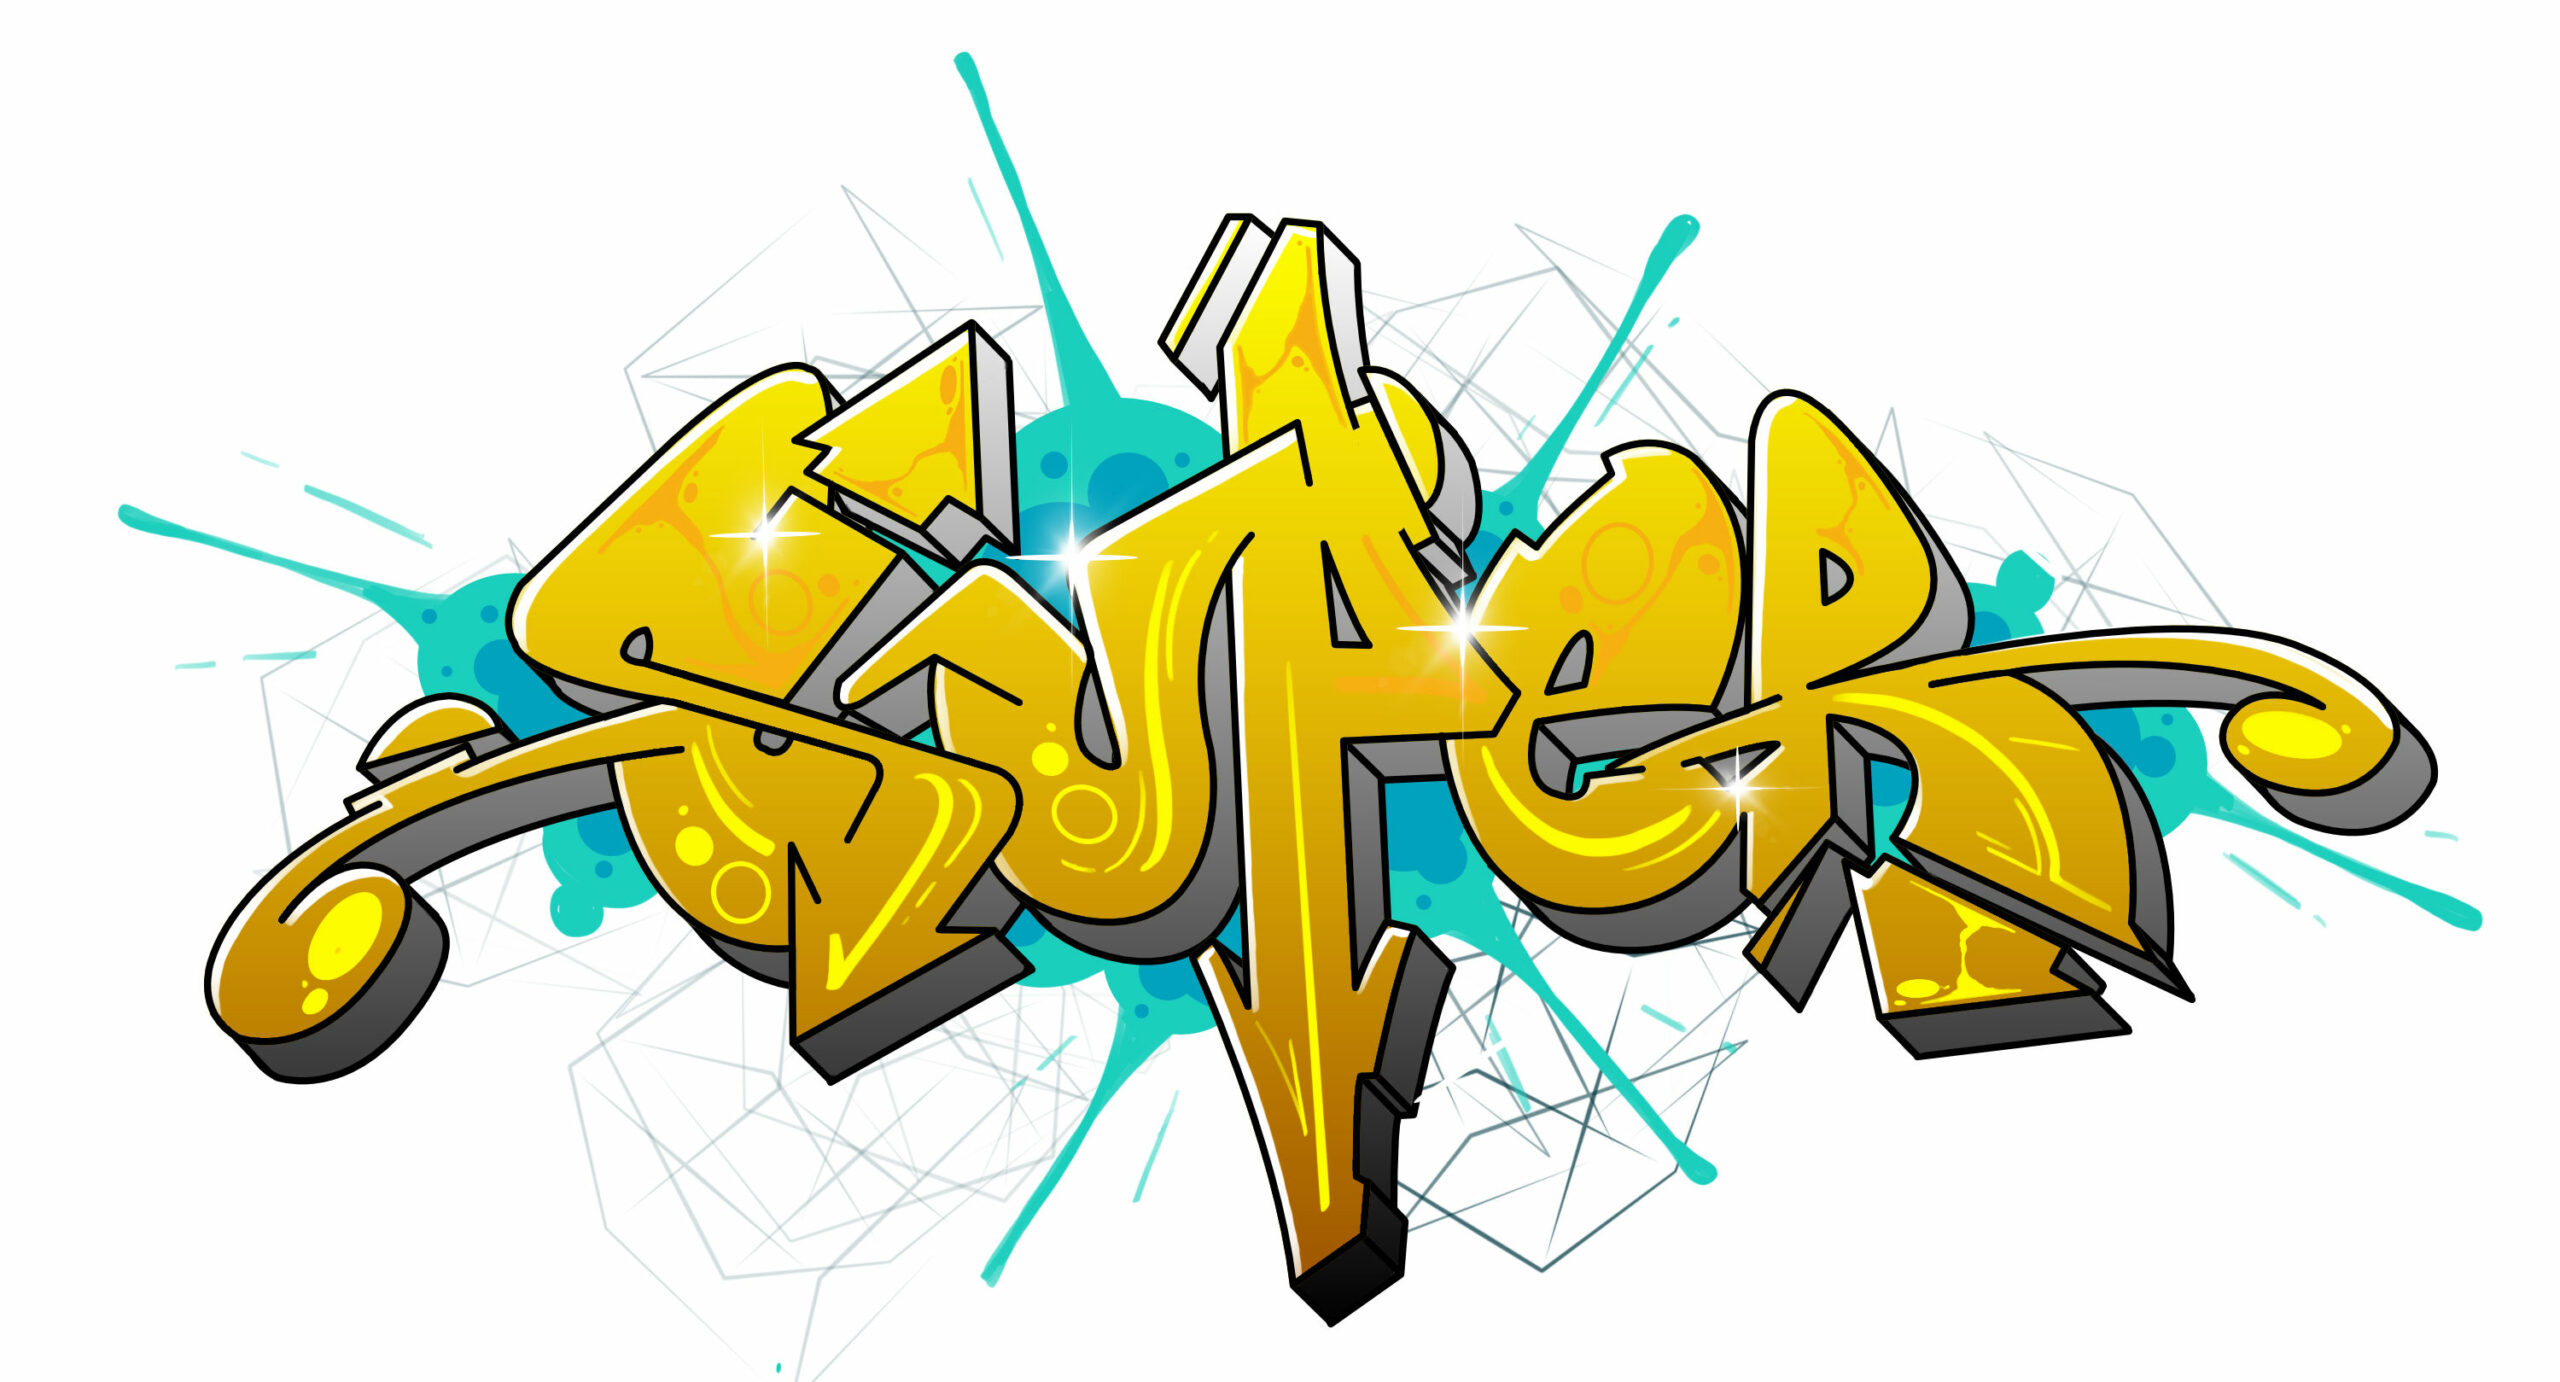 “Super” als Graffiti in 17 Schritten zeichen